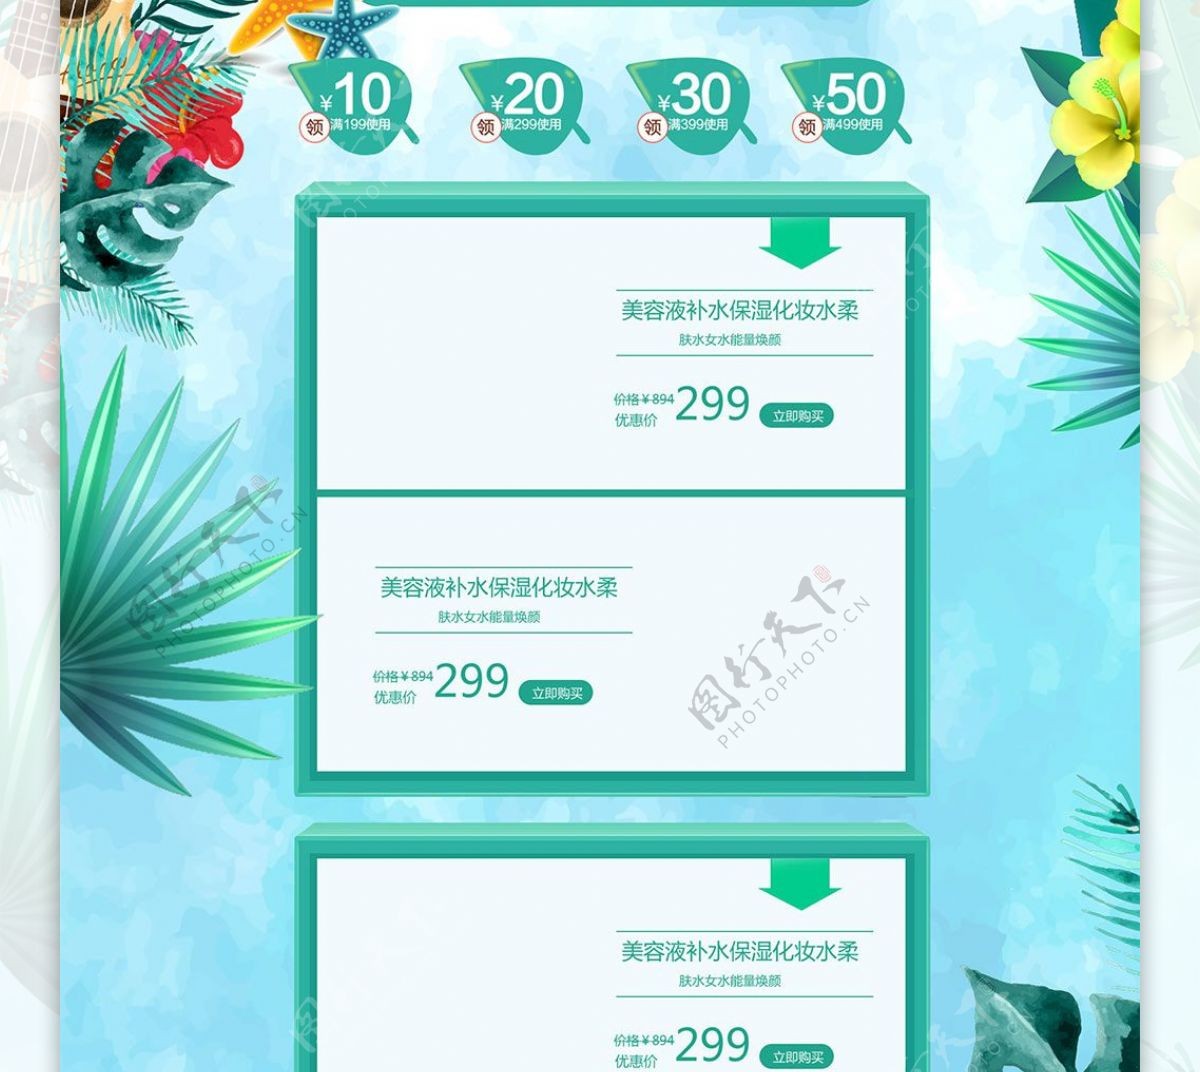 66大聚惠夏季促销天猫淘宝电商首页模板